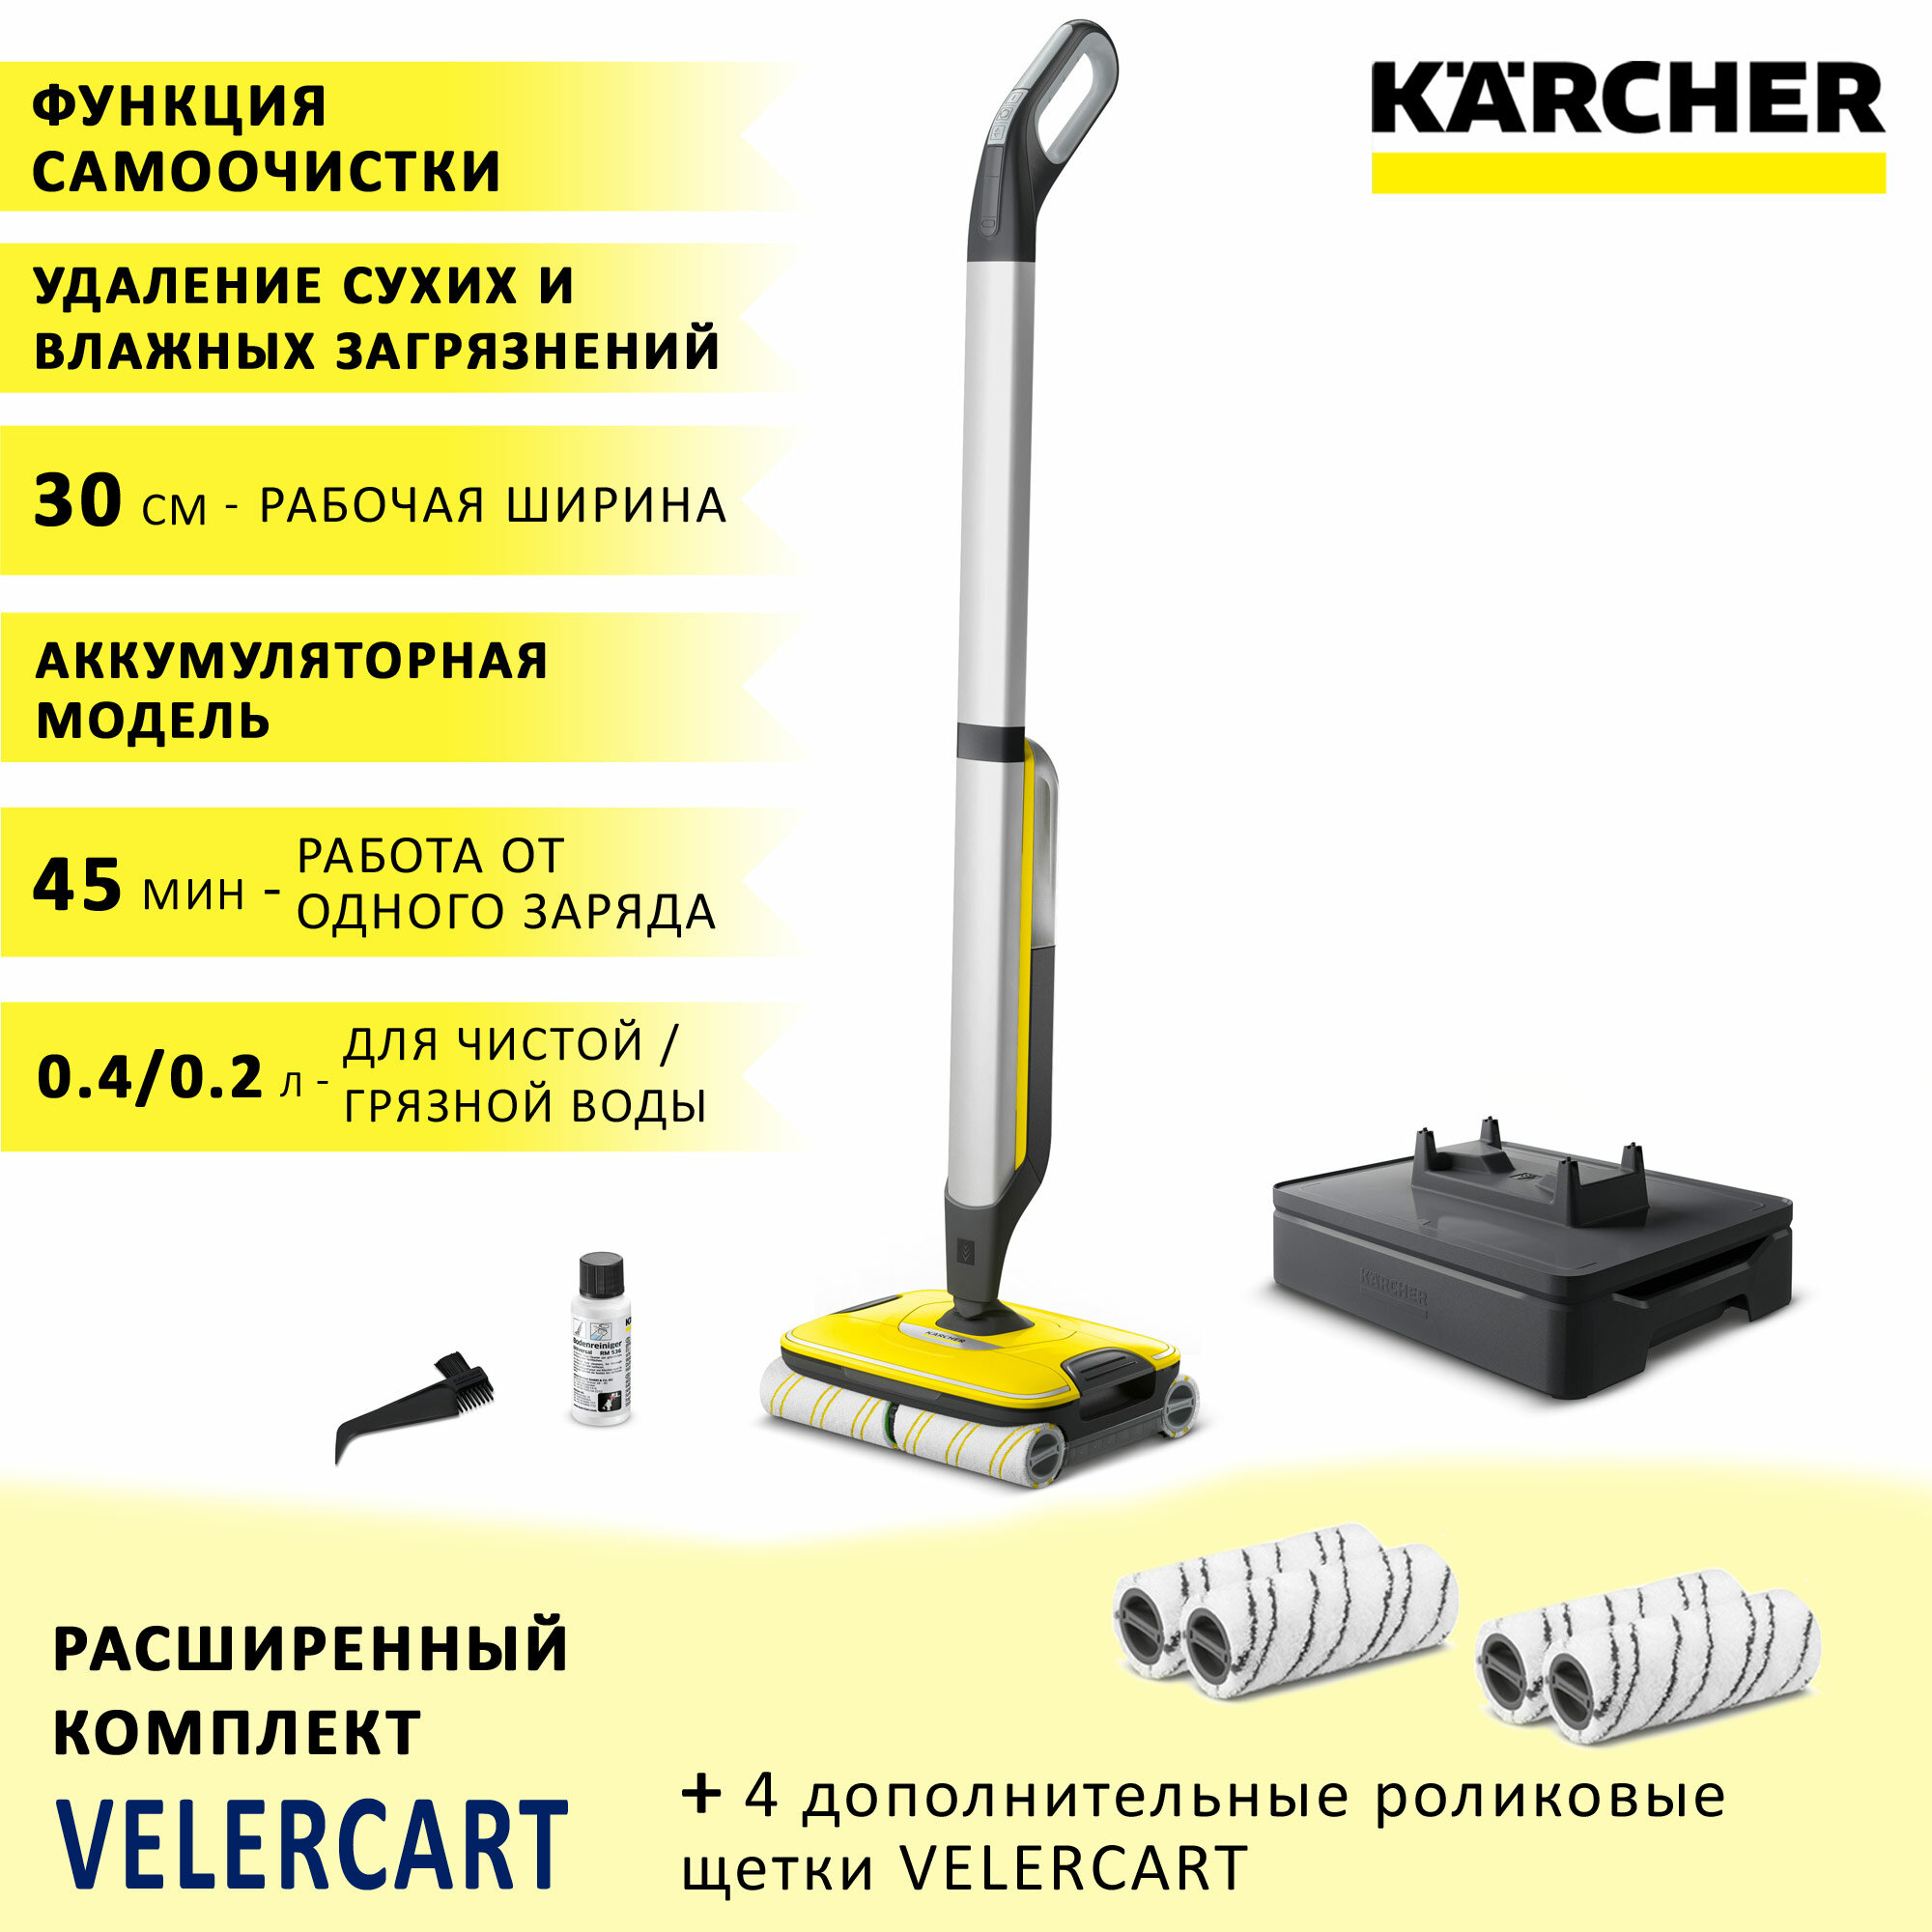 Аккумуляторный аппарат для влажной уборки пола (электрошвабра) Karcher FC 7 Cordless + 4 роликовые щетки VELERCART